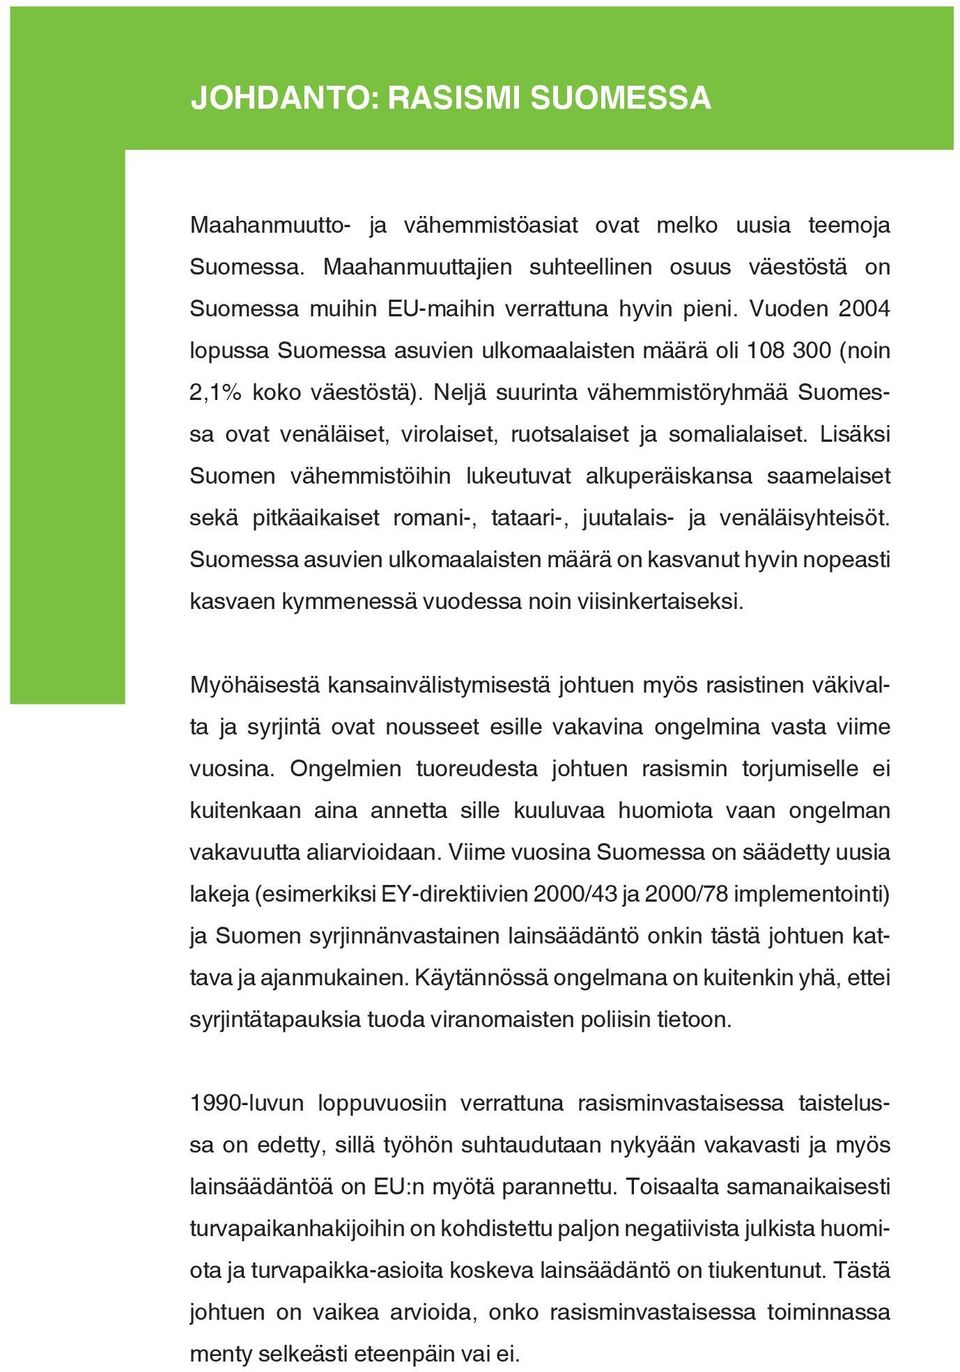 Lisäksi Suomen vähemmistöihin lukeutuvat alkuperäiskansa saamelaiset sekä pitkäaikaiset romani-, tataari-, juutalais- ja venäläisyhteisöt.